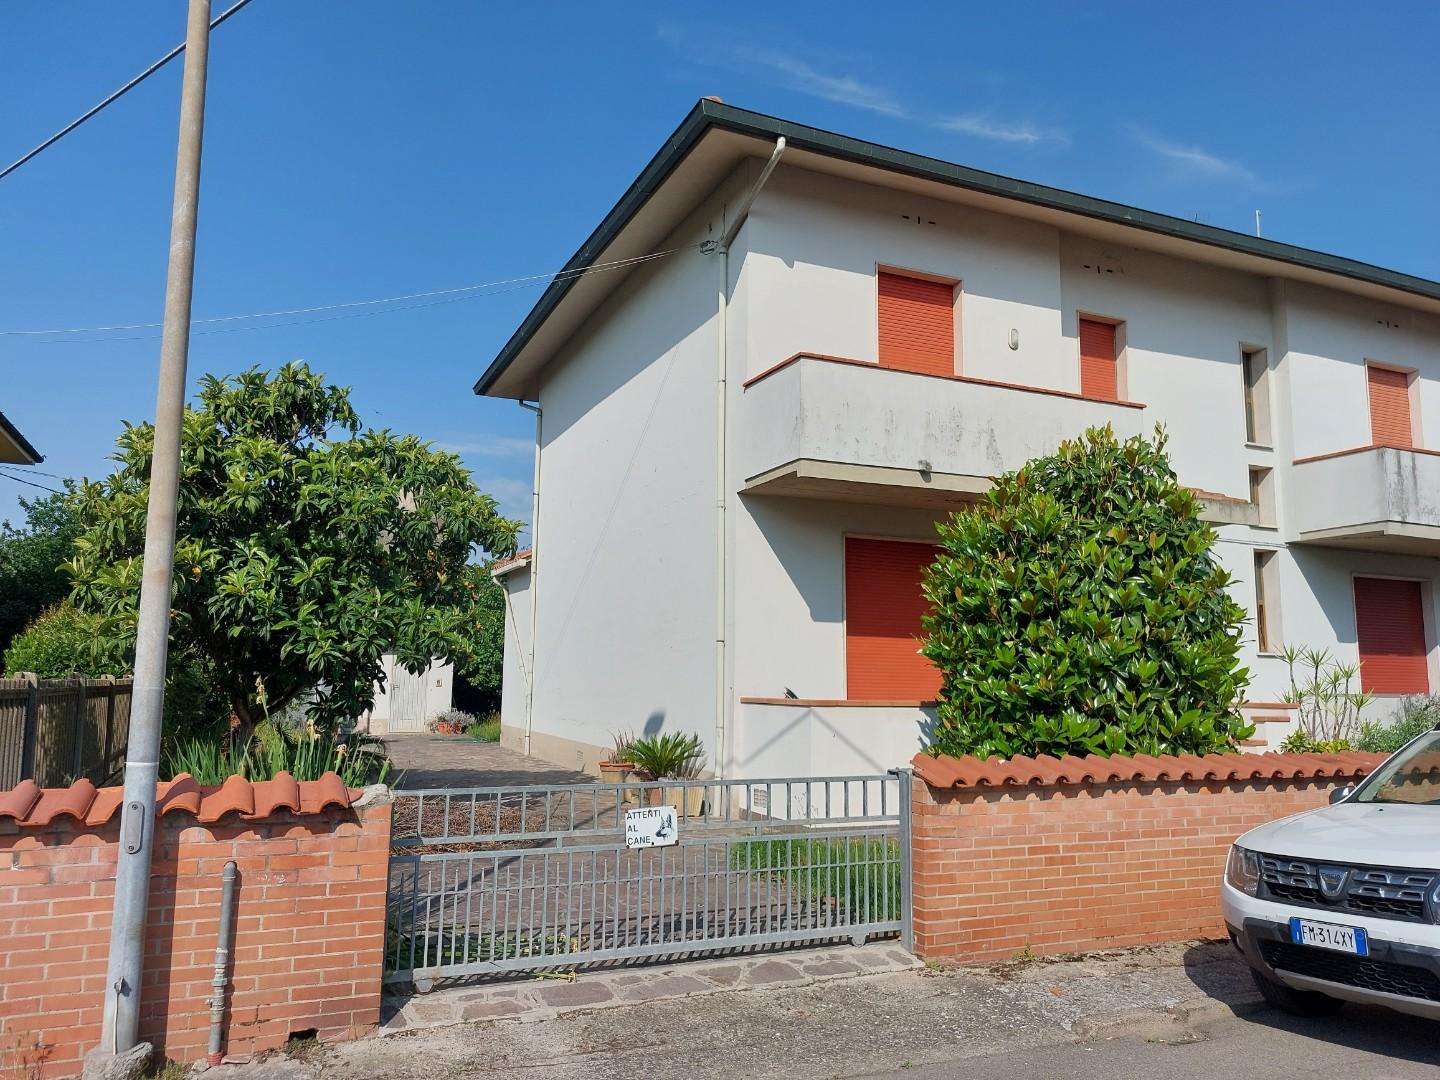 Casa Bi - Trifamiliare in Vendita a Santa Croce sull'Arno Benedetto Croce